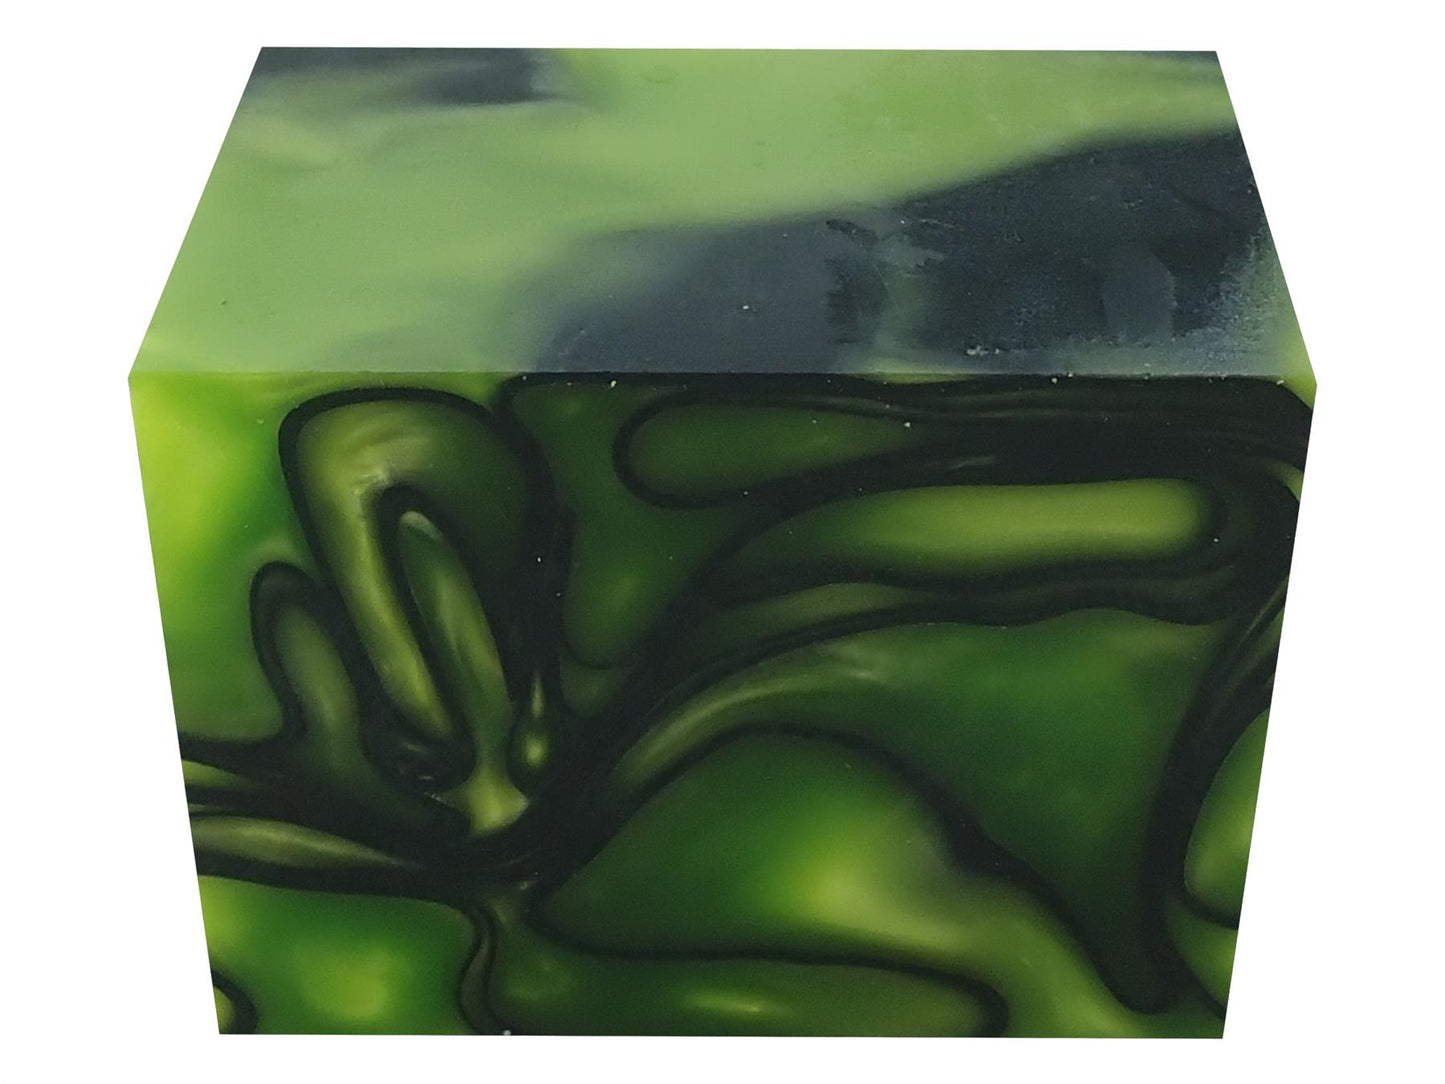 Turners' Mill Toxic Green Abstract Kirinite Acrylic Block - 64x42x42mm (2.5x1.65x1.65")